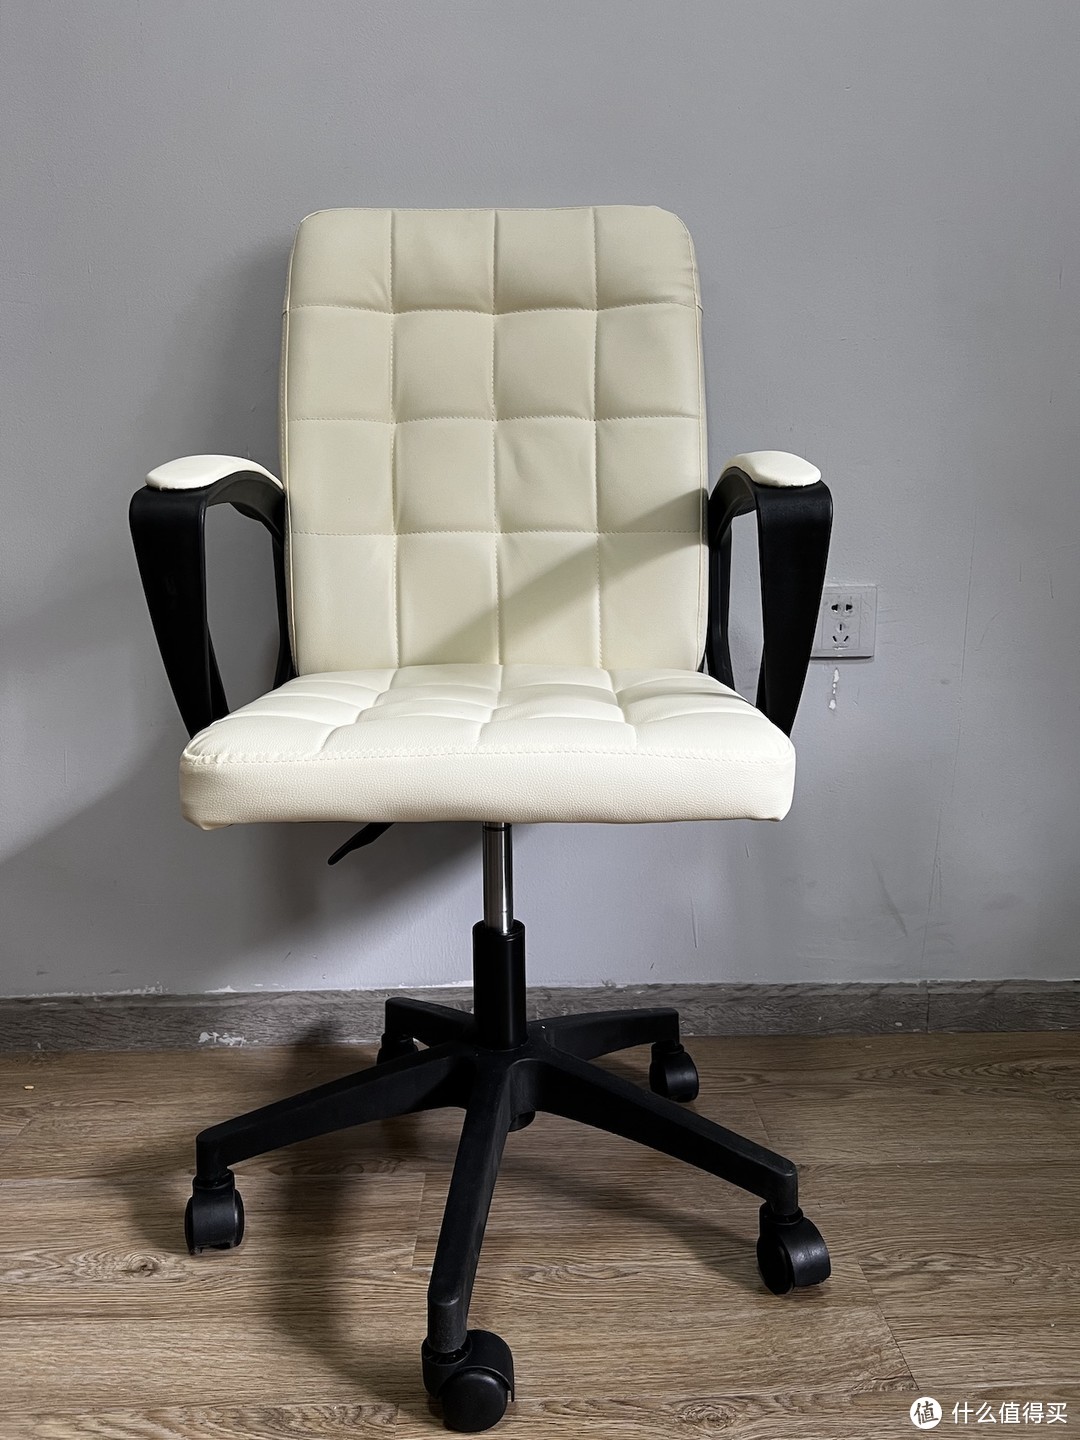 300元价位七把电脑椅的一些使用感受，对比高端人体工学椅